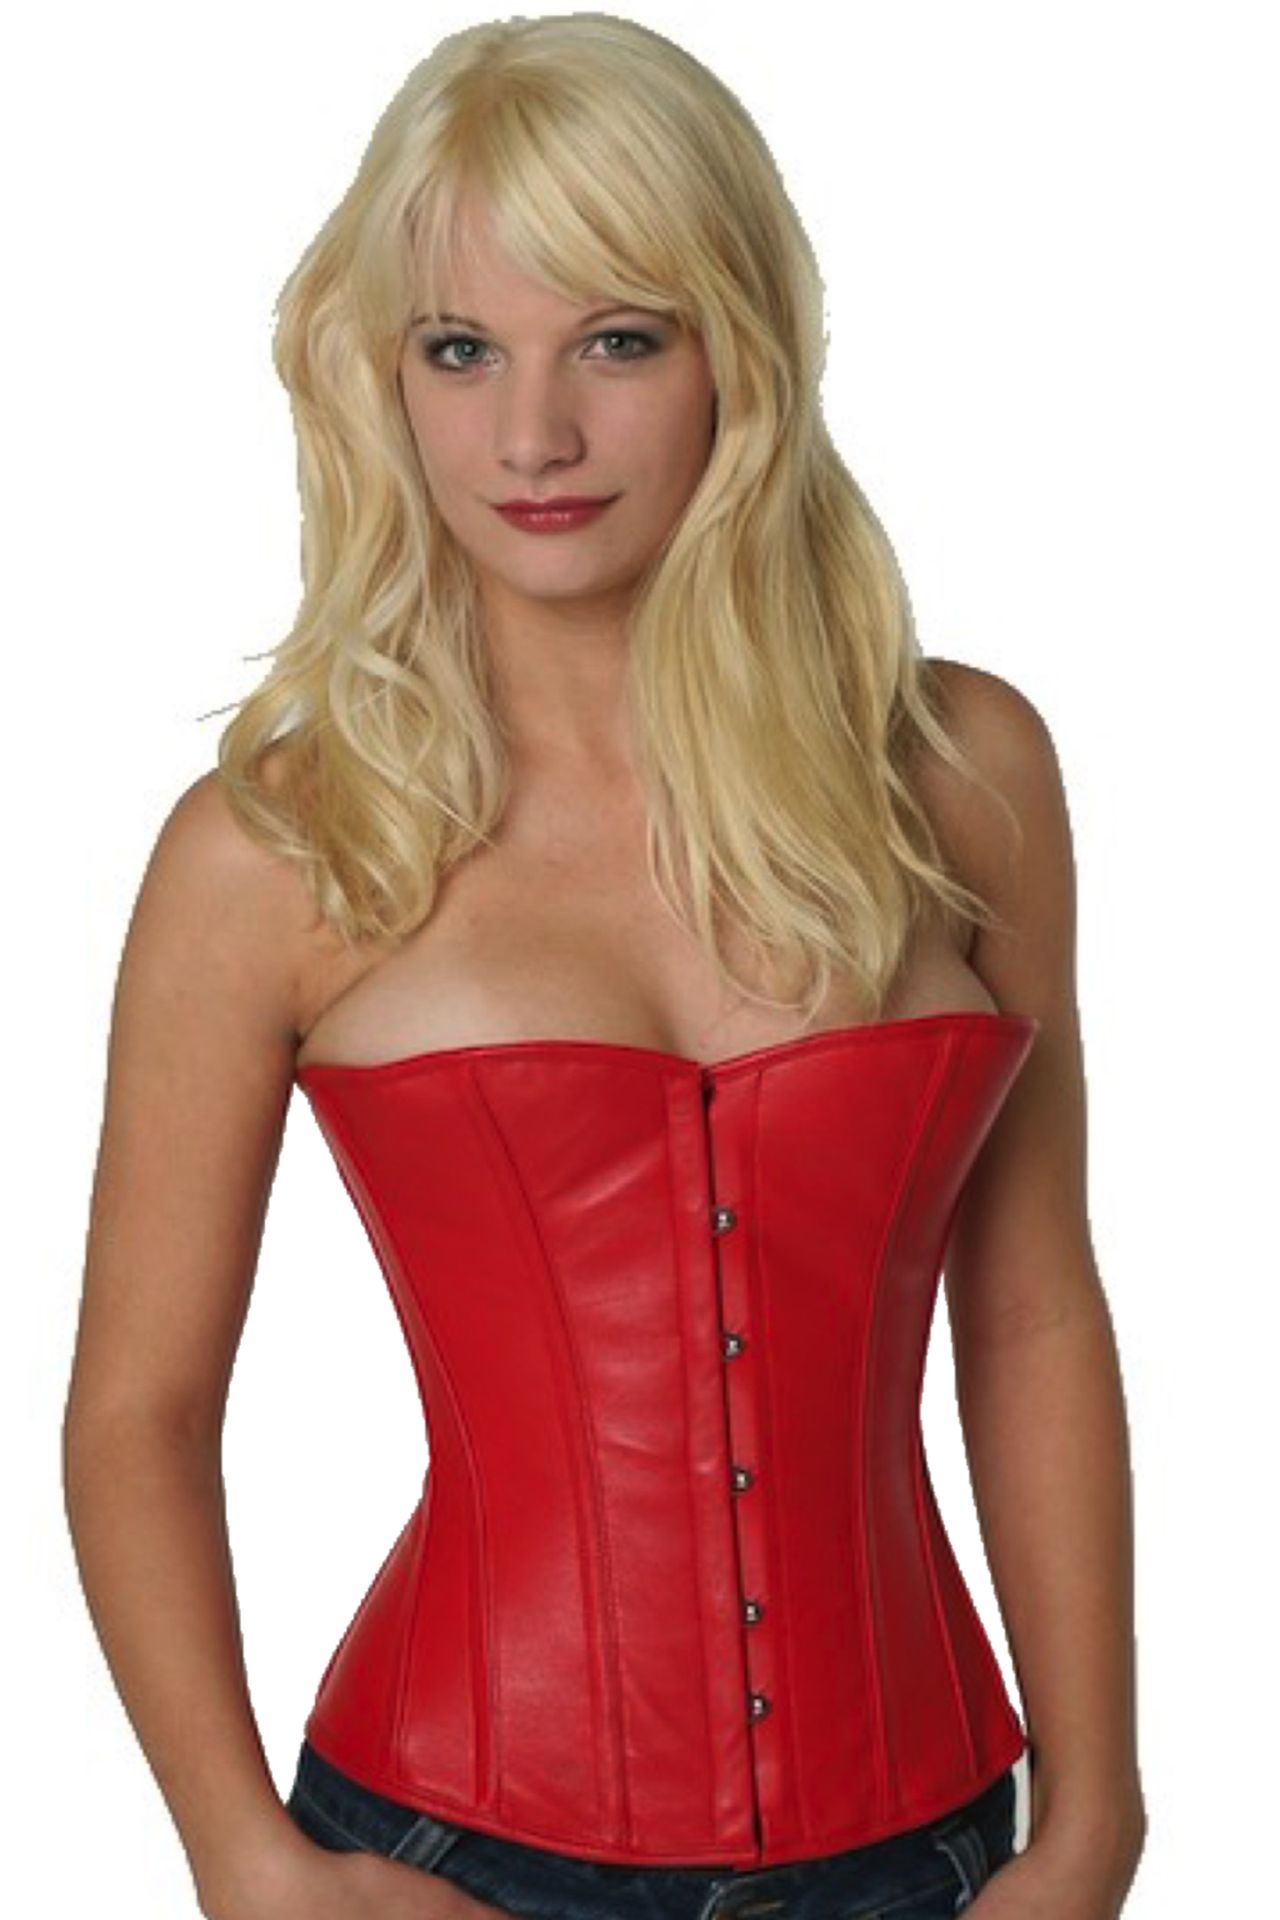 Corse rojo cuero medio pecho corset lh23